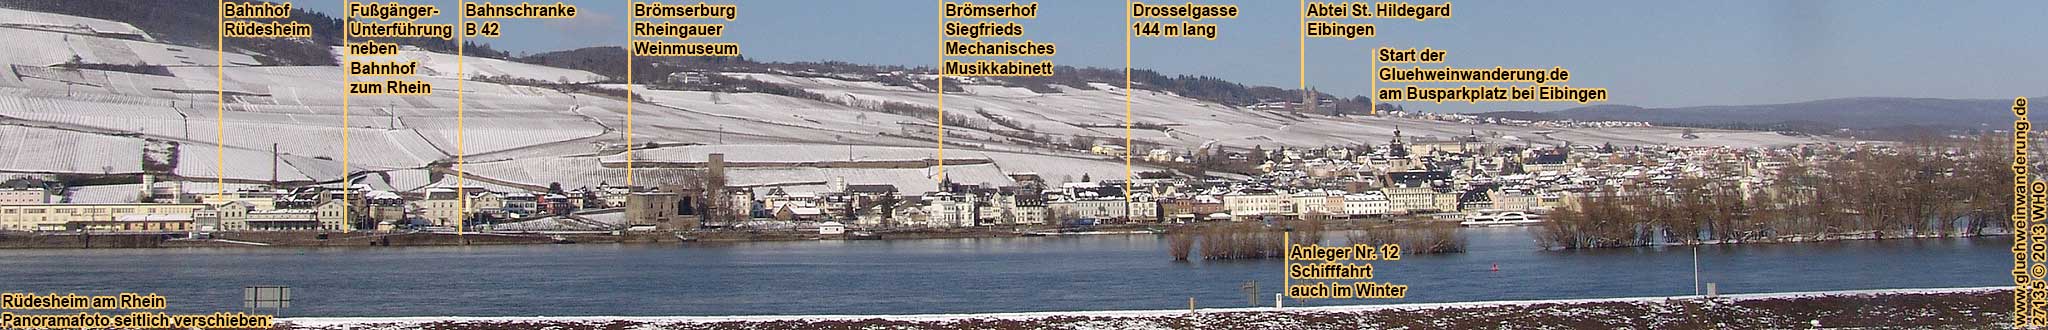 Rdesheim am Rhein im Winter. Panoramafoto mit Schiffsanlegern.